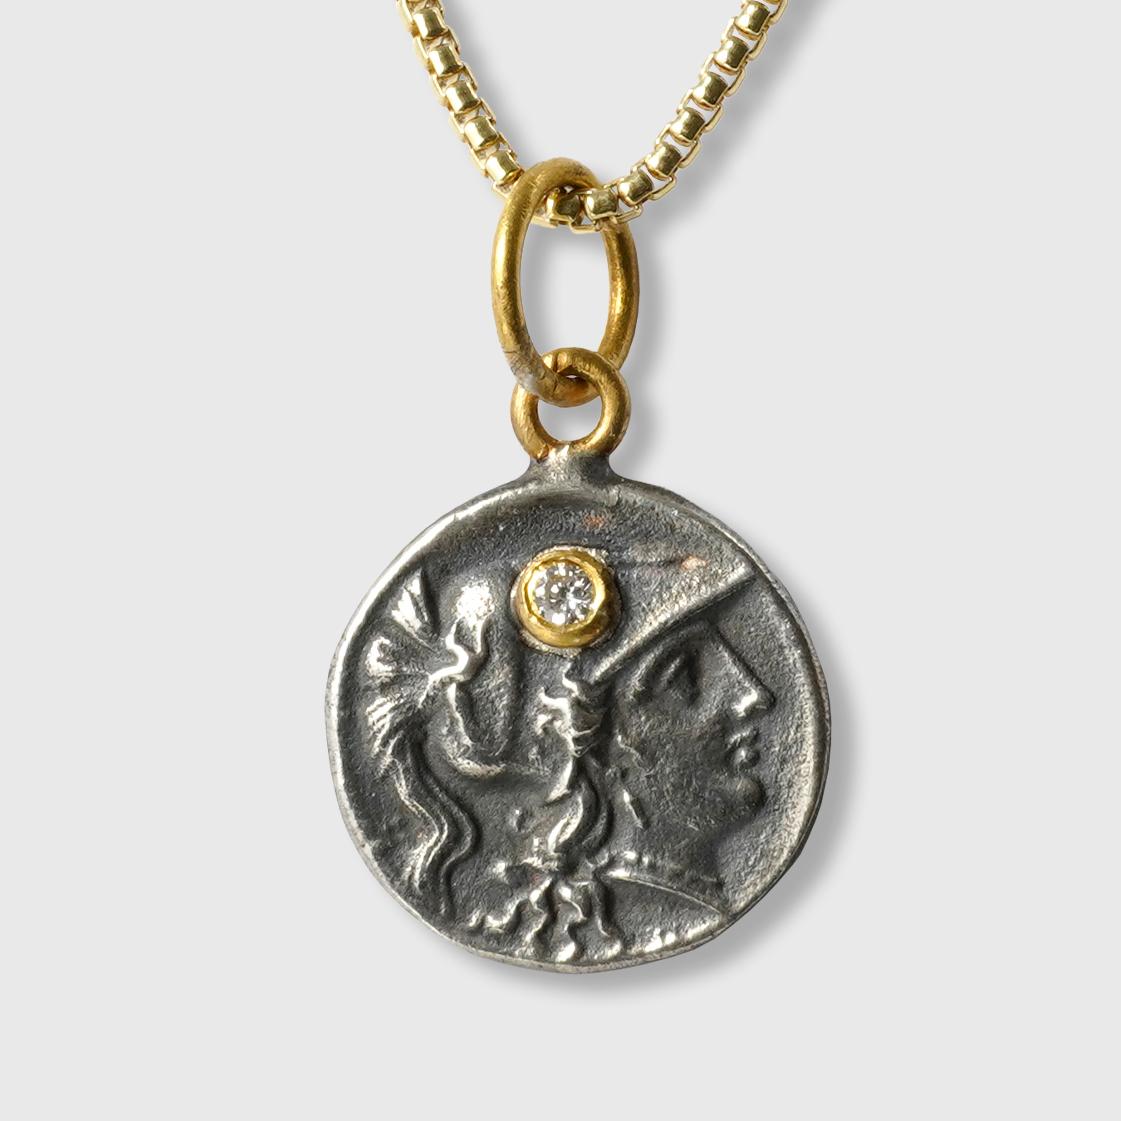 Pendentif en or 24kt, argent et diamant de 0,01ct en forme de tétradrachme (réplique de la pièce d'Athéna).

L'HISTOIRE : 
Athéna était l'une des douze principales divinités de l'Olympe et la déesse associée à la sagesse, à l'artisanat et à la